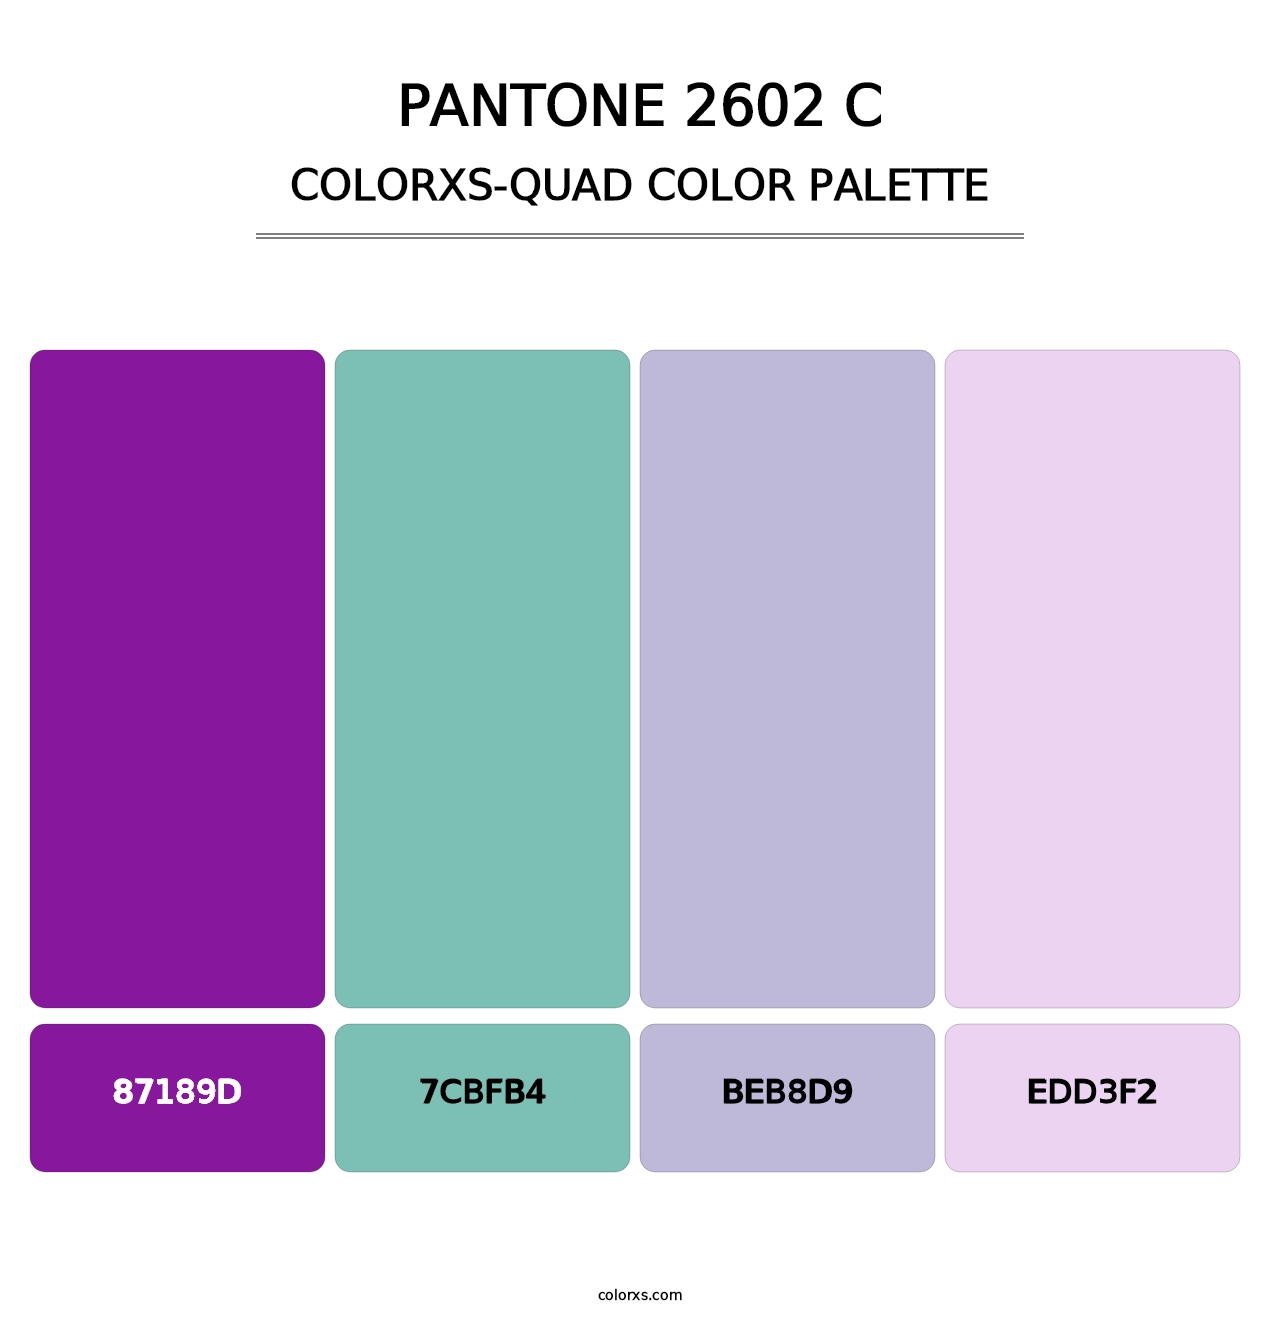 PANTONE 2602 C - Colorxs Quad Palette